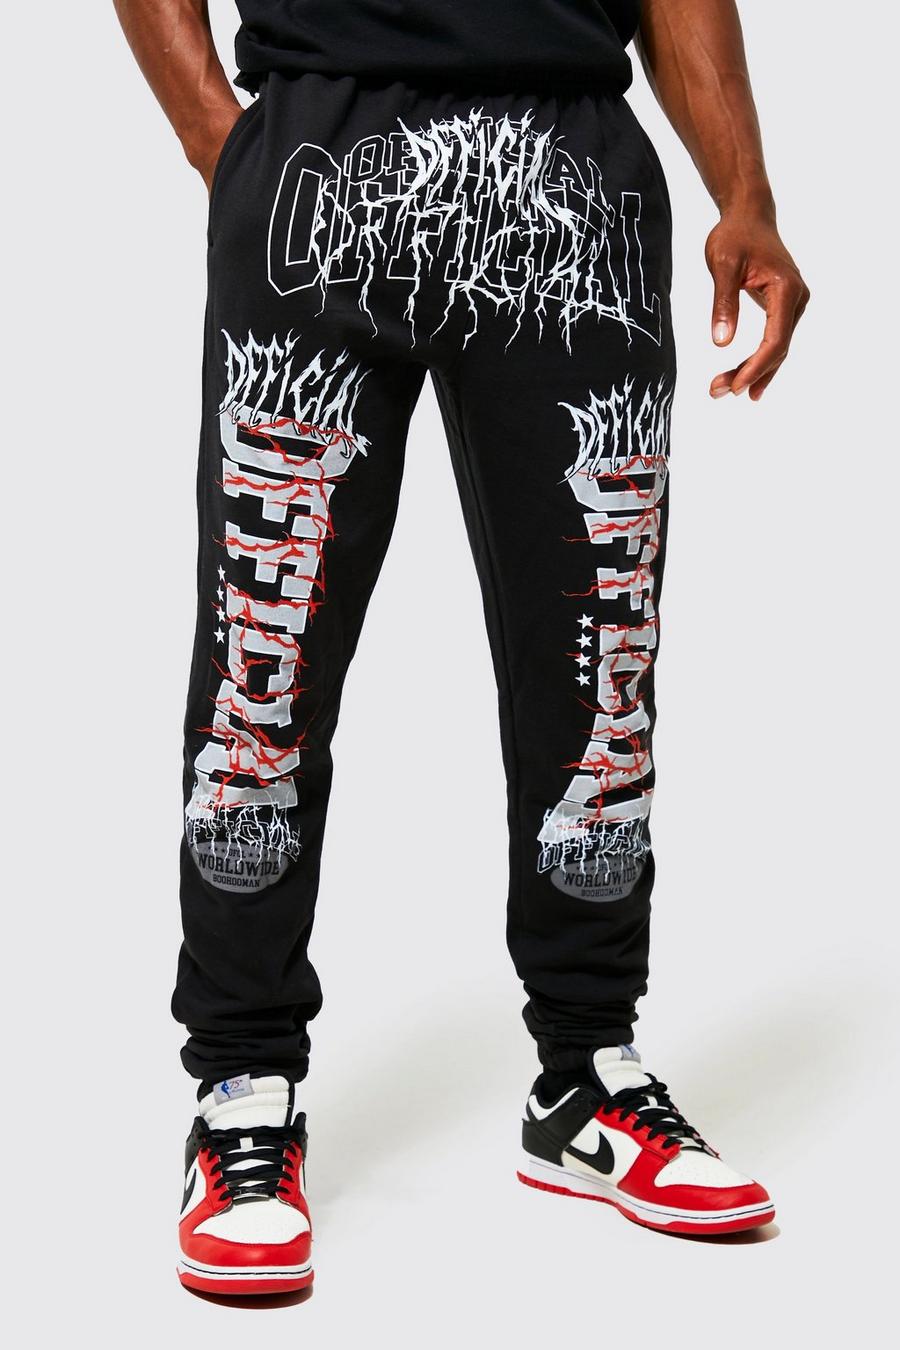 Pantalón deportivo Tall con estampado gráfico Official de letras góticas, Black nero